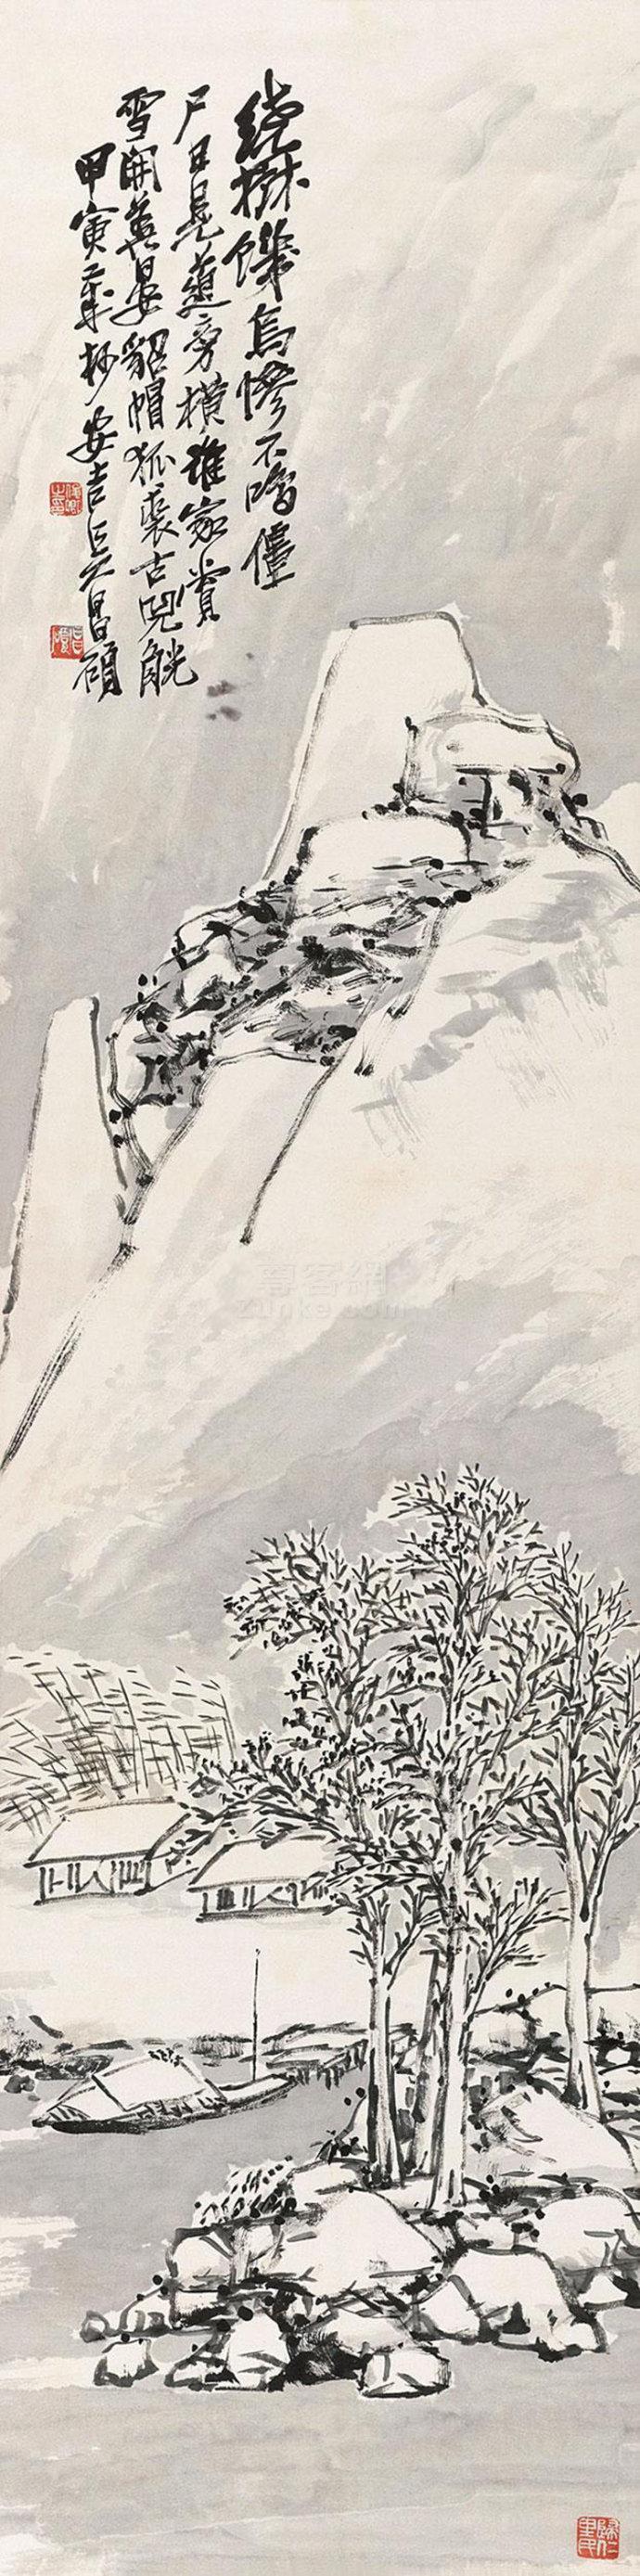 石鼓篆书第一人,文人画最后的高峰,吴昌硕山水画欣赏